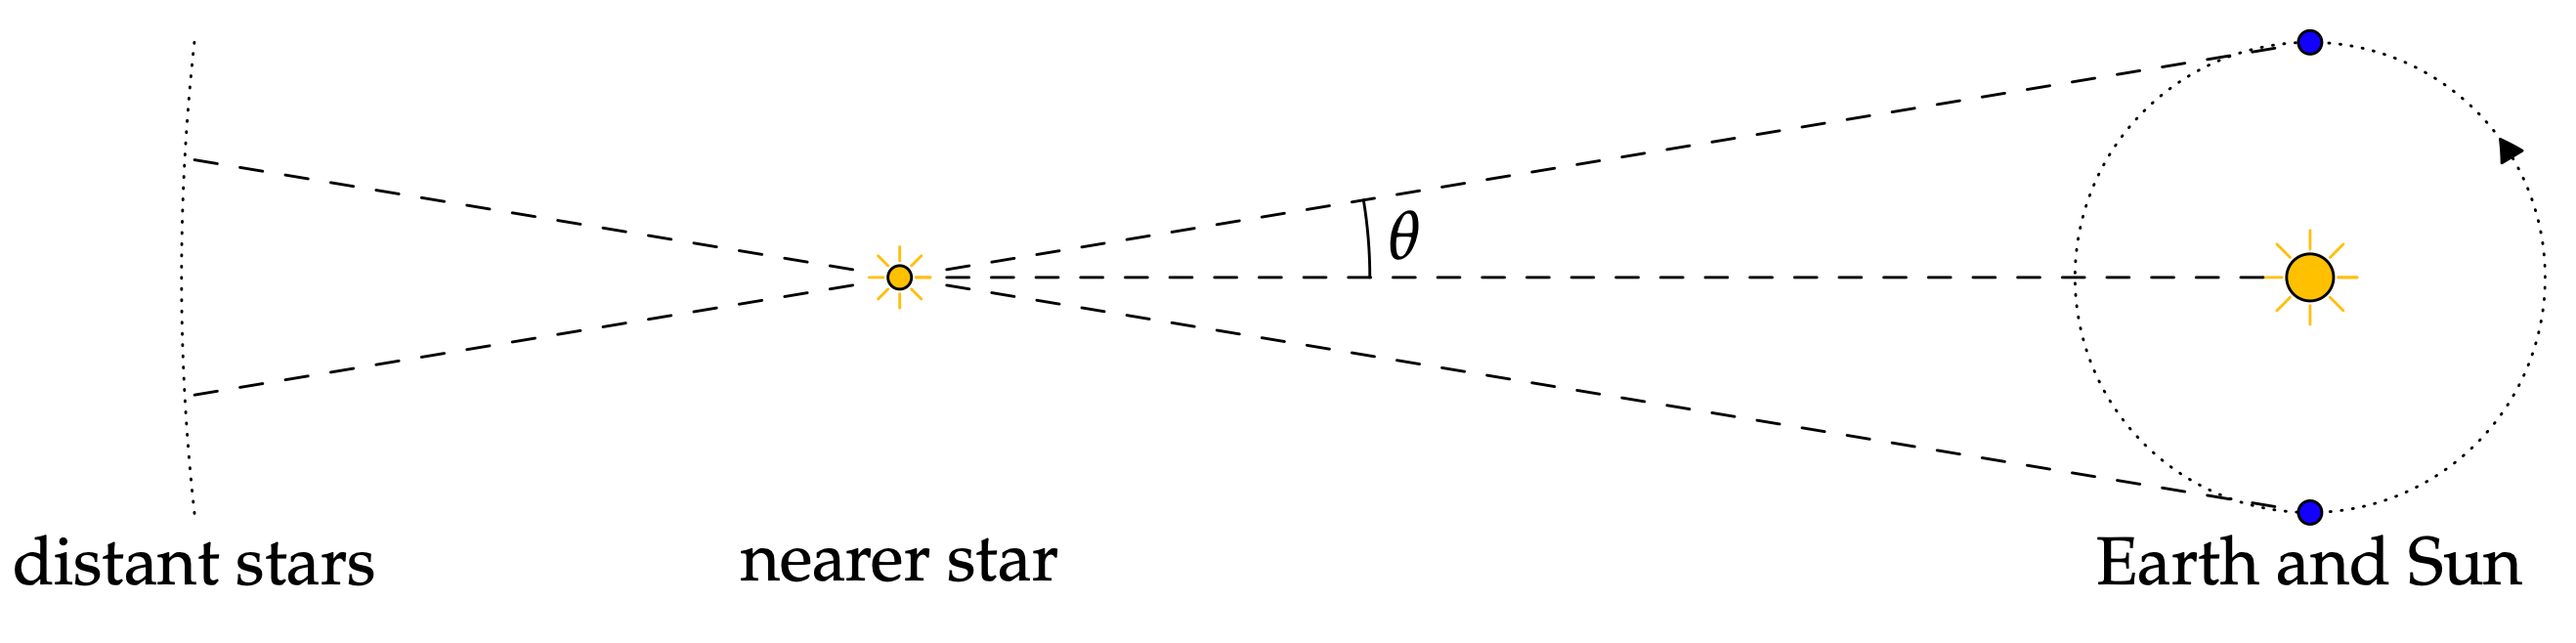 astronomi eksempel - bilde av www.math.uci.edu